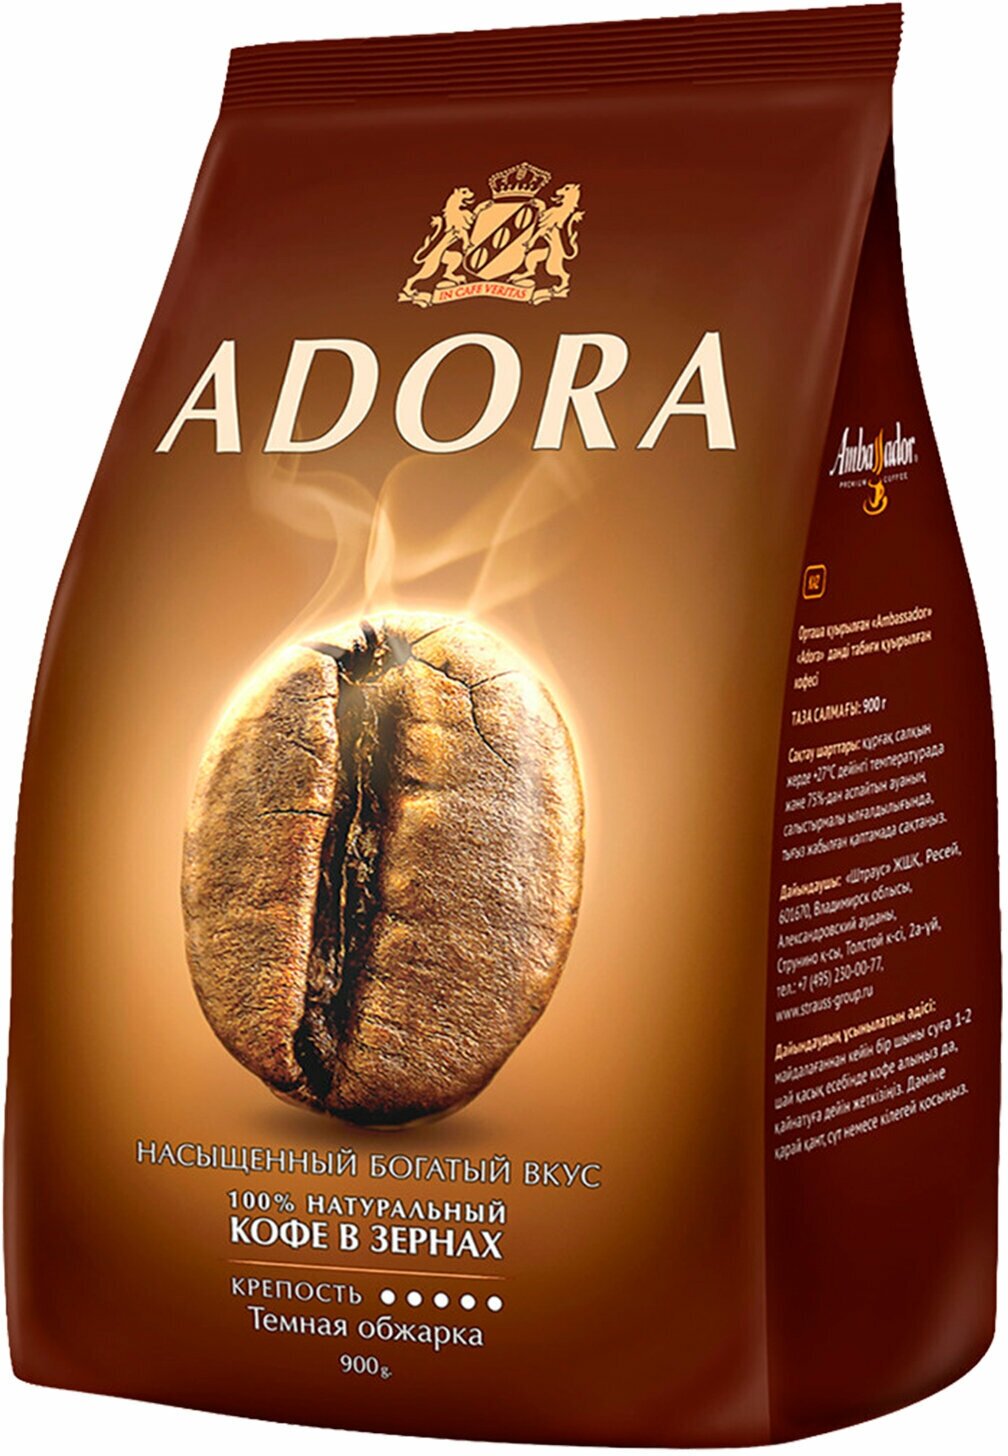 Кофе в зернах AMBASSADOR "Adora", 900 г, вакуумная упаковка В комплекте: 1шт.